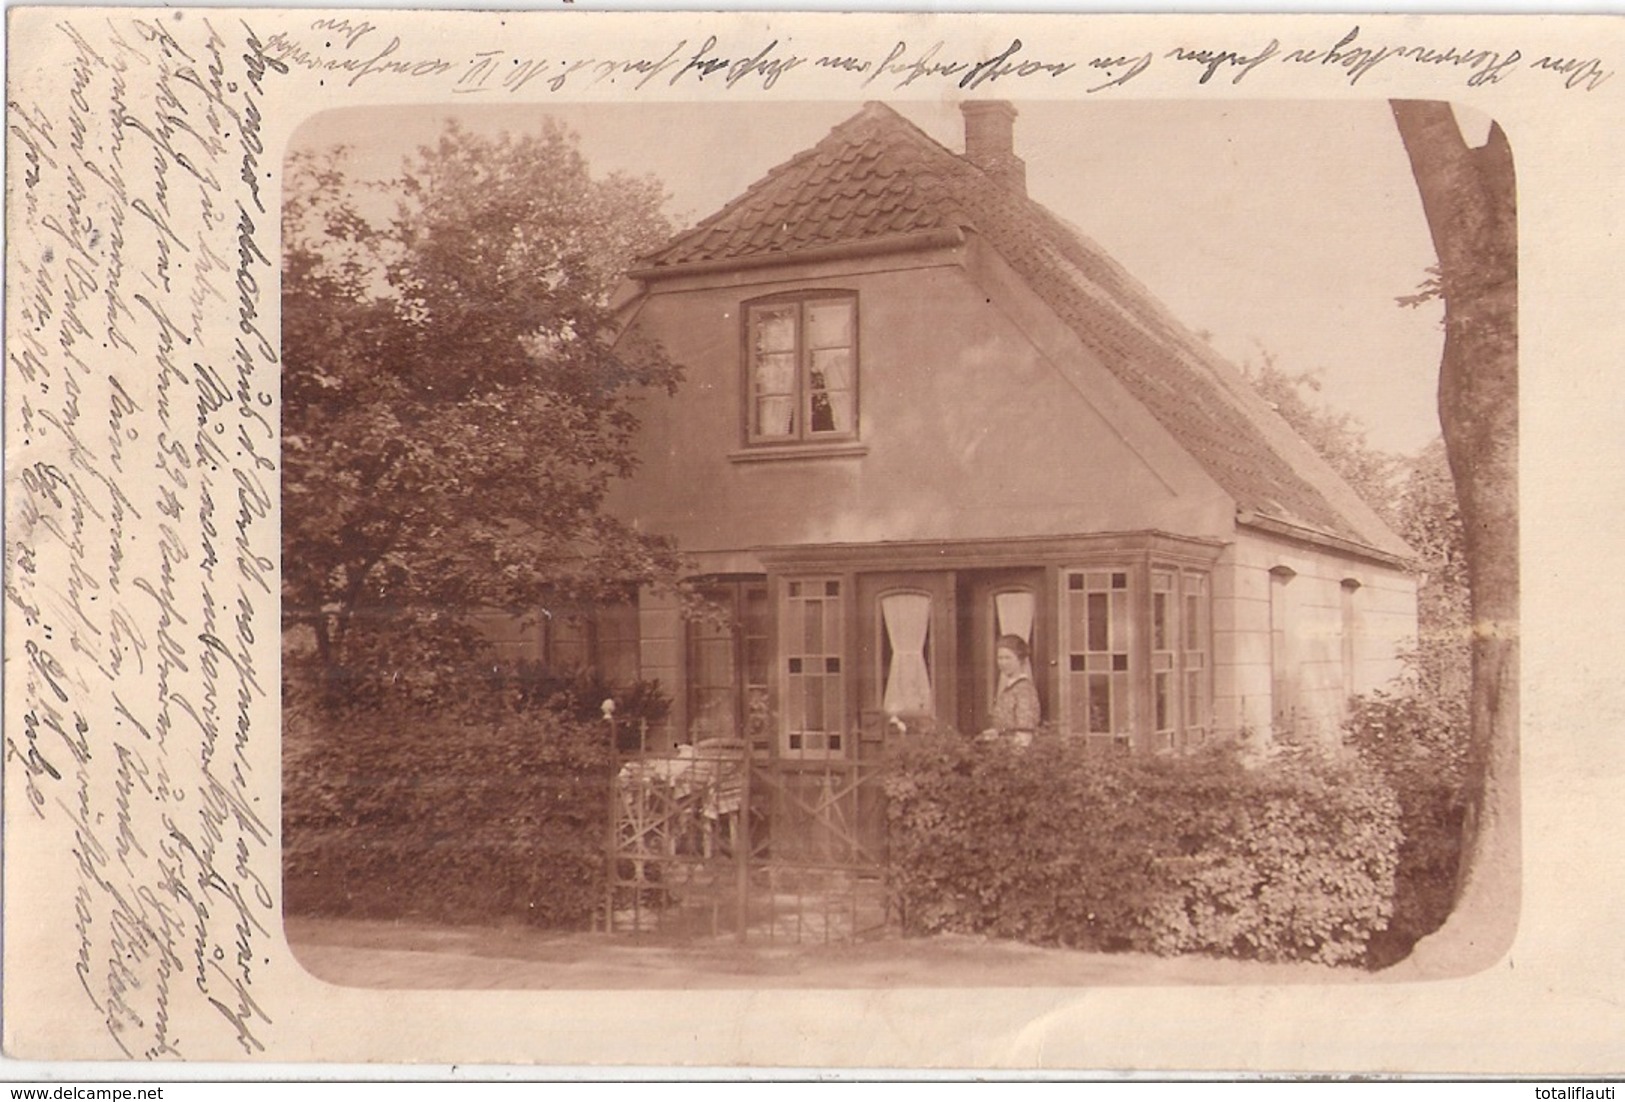 GLÜCKSTADT Belebtes Idyllisches Einzelhaus Von Familie Schulze Gelaufe 30.7.1917 Original Private Fotokarte Unikat - Glückstadt